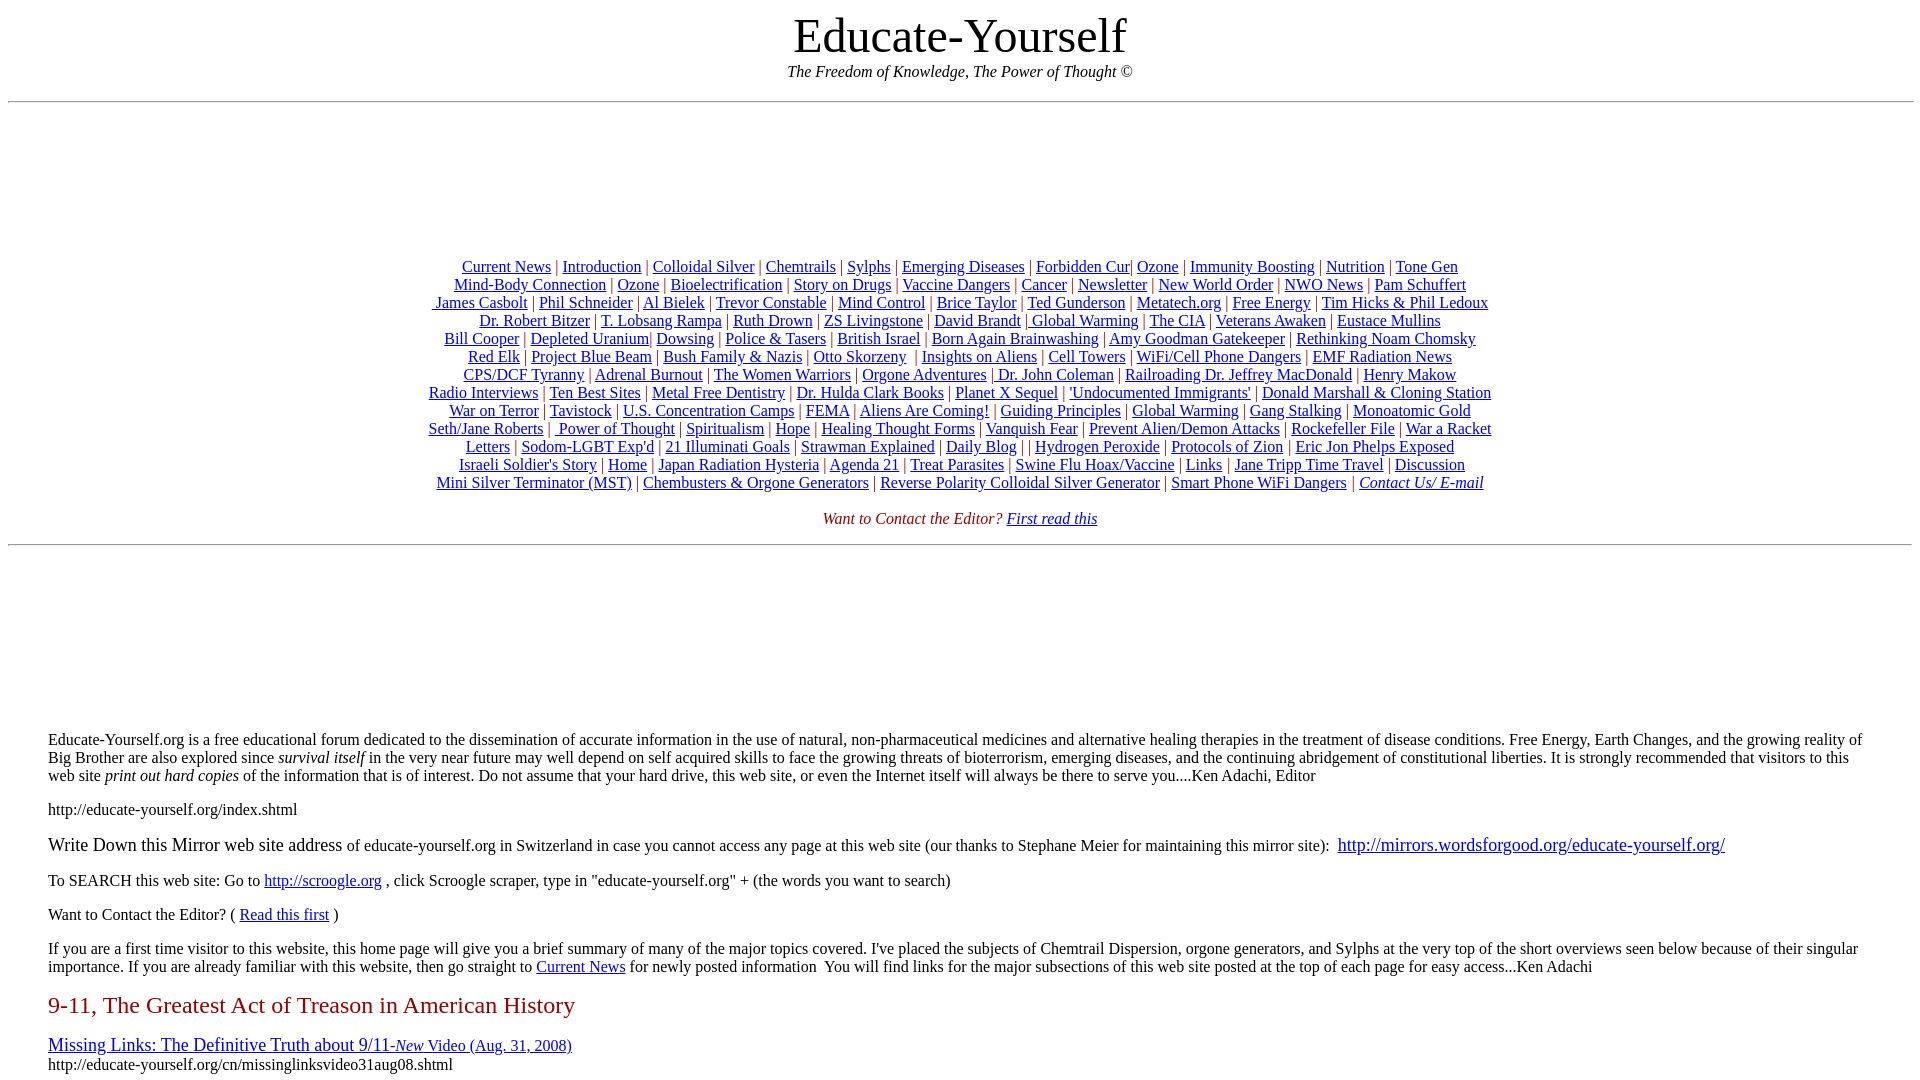 Stato del sito web educate-yourself.org è   ONLINE